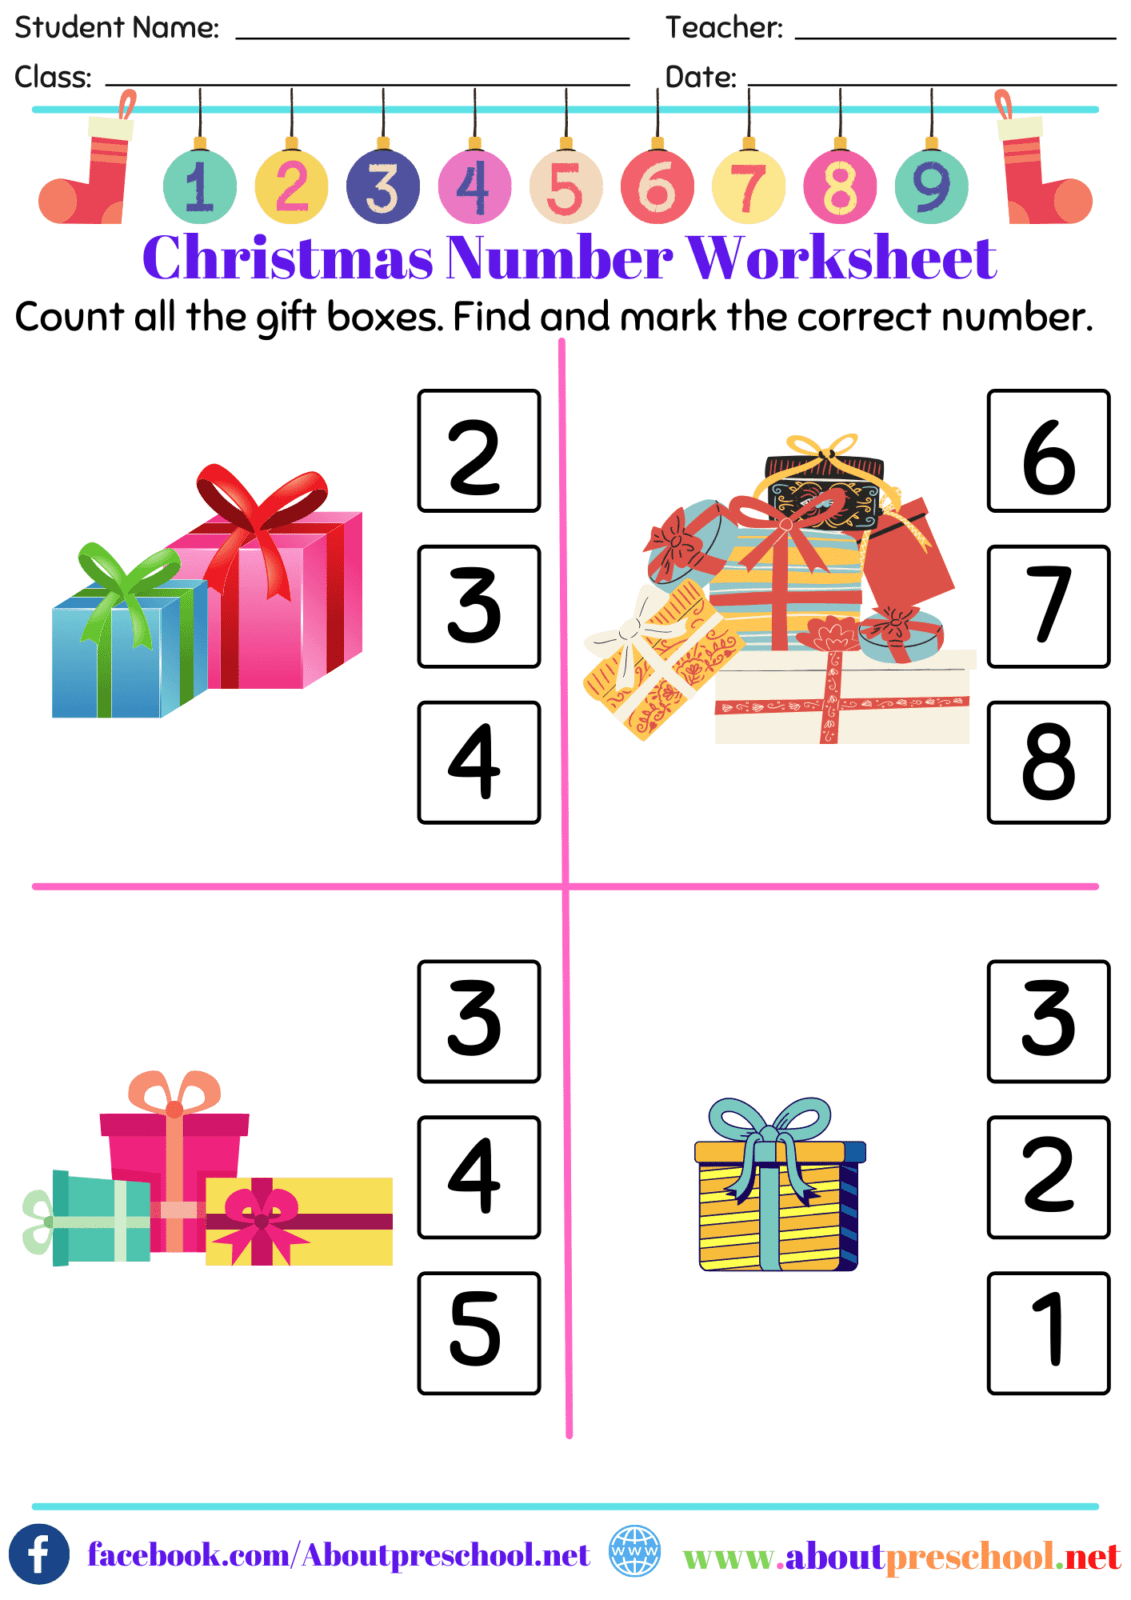 Christmas Number Worksheet 2